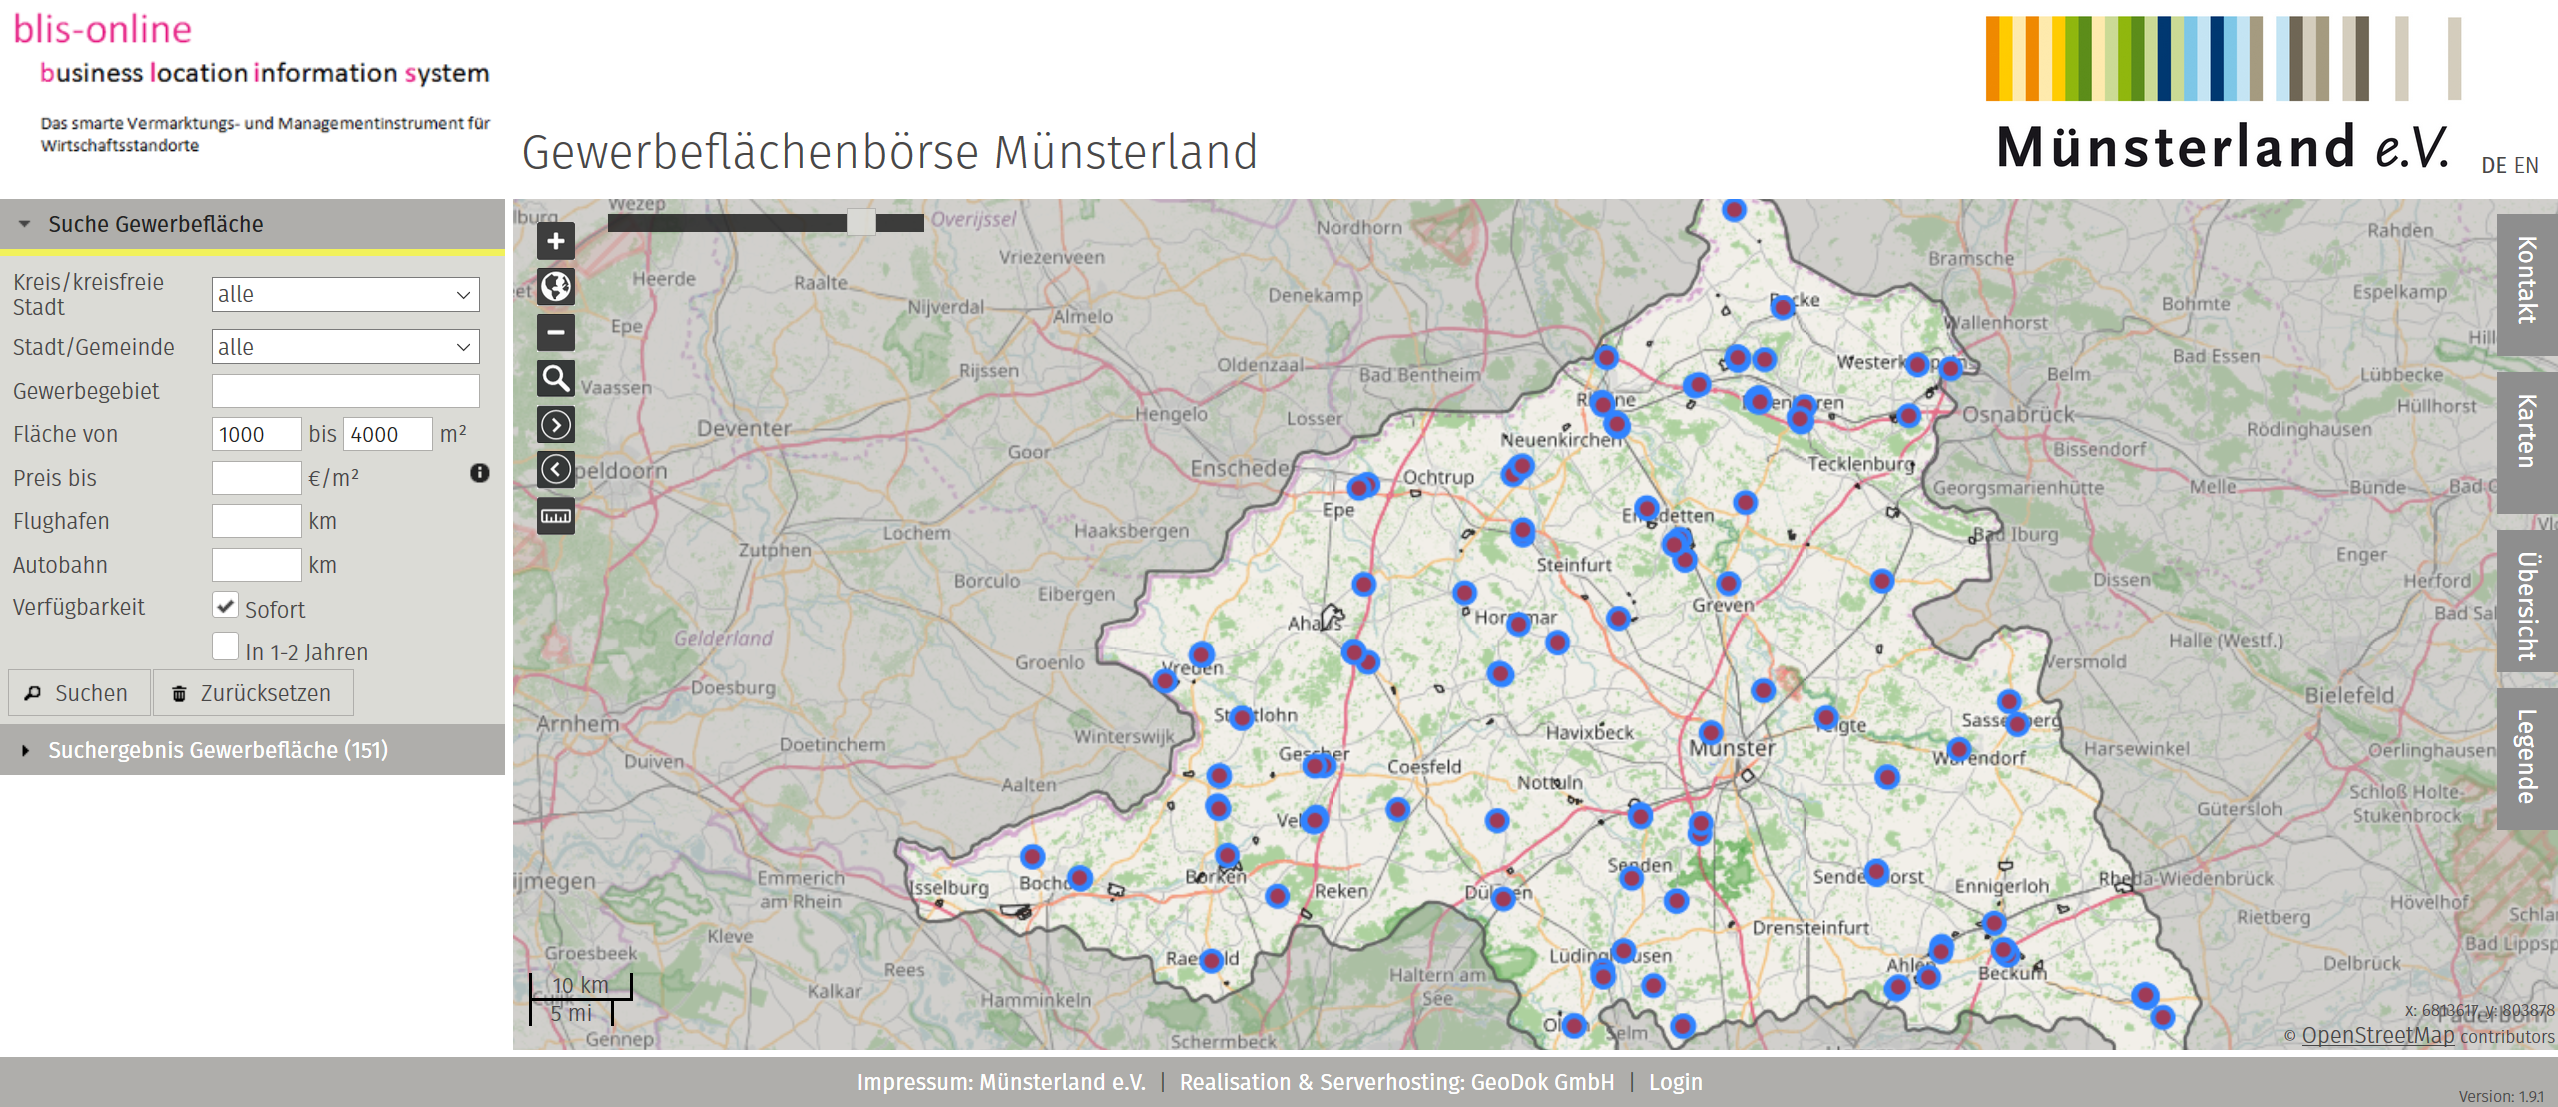 Gewerbeflächenbörse Münsterland auf Basis von blis-online